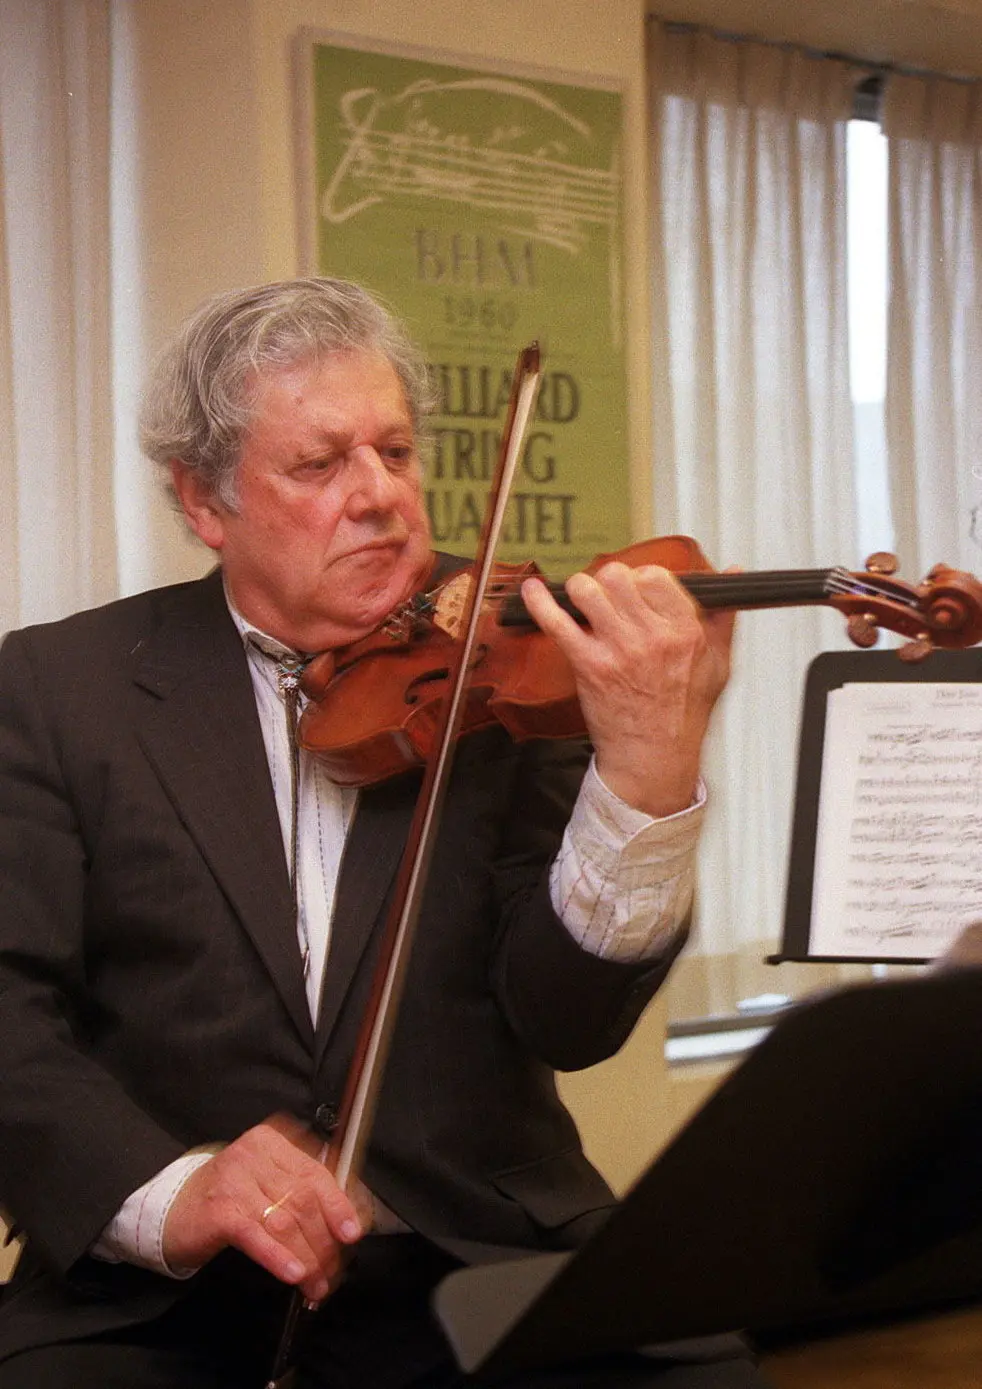 Sr. Mann foi o primeiro violinista do Juilliard String Quartet desde sua estreia formal em 1947 até sua aposentadoria 50 anos depois. (Crédito da fotografia: Cortesia Ruby Washington/The New York Times)